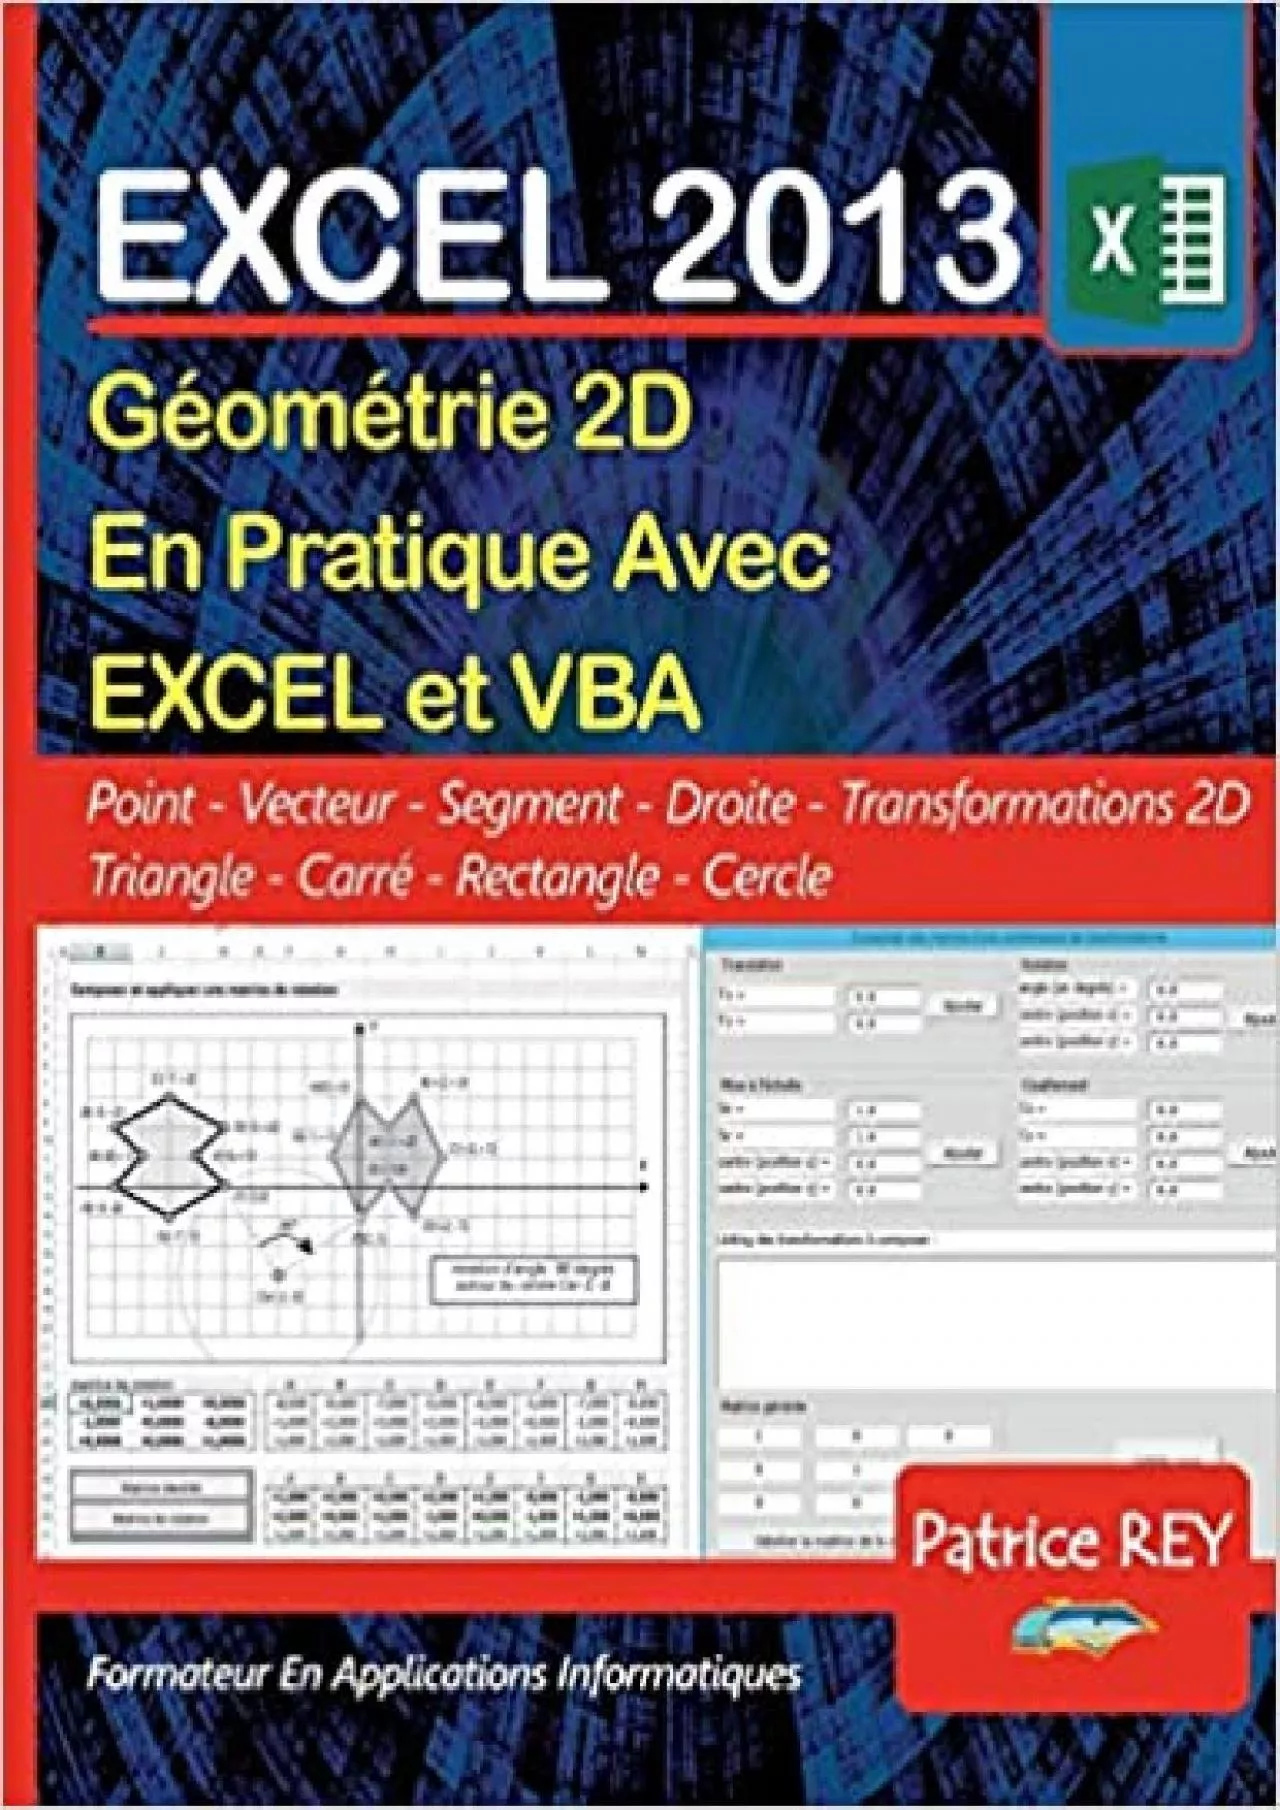 (DOWNLOAD)-Geometrie 2D avec EXCEL 2013 et VBA: avec le tableur EXCEL (French Edition)